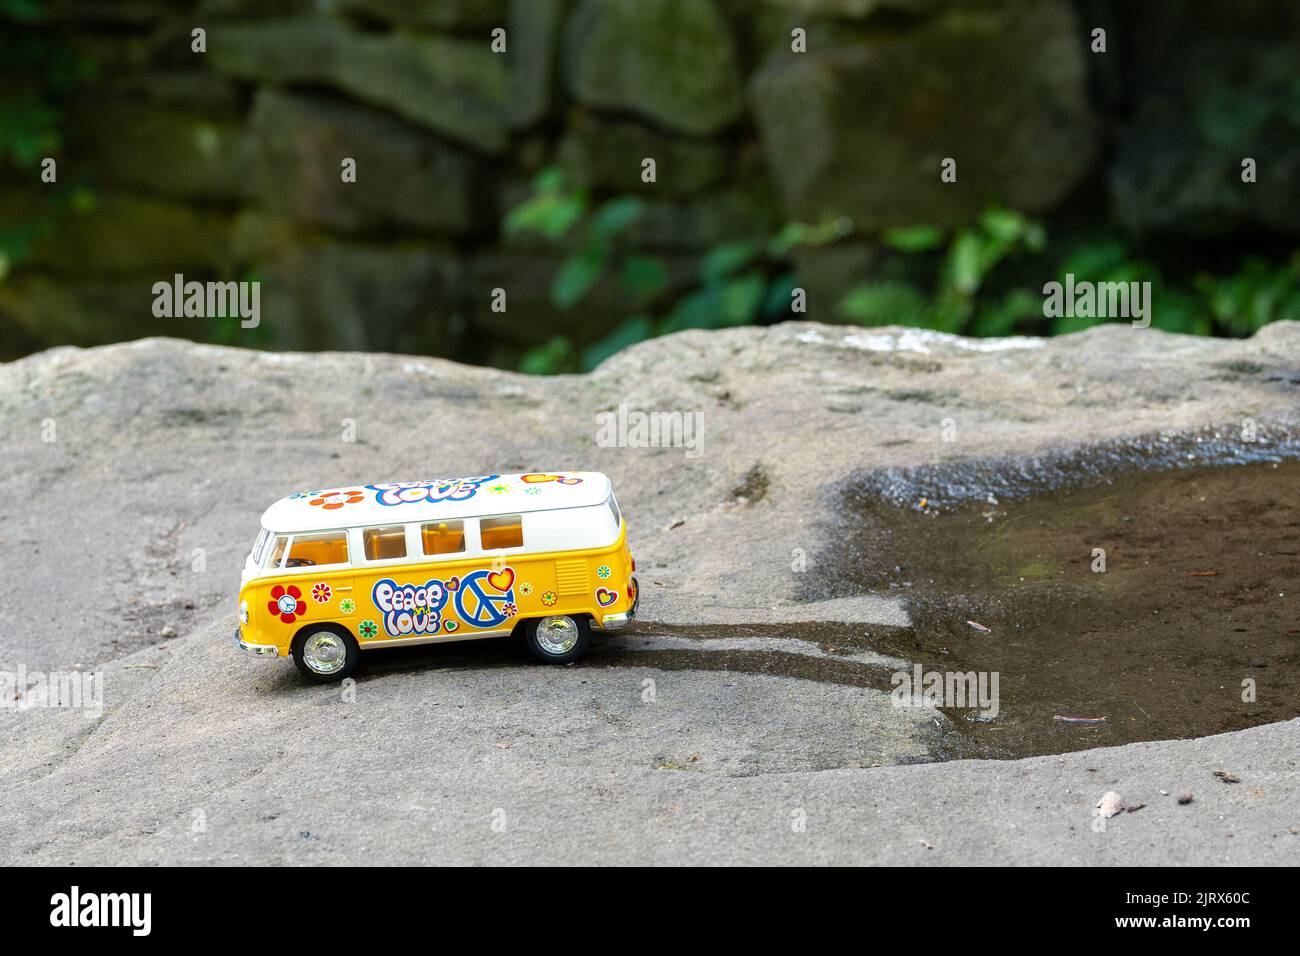 Pulmino VW giallo, in una scena naturalistica, su una roccia, in partenza da una pozza d'acqua. Foto Stock